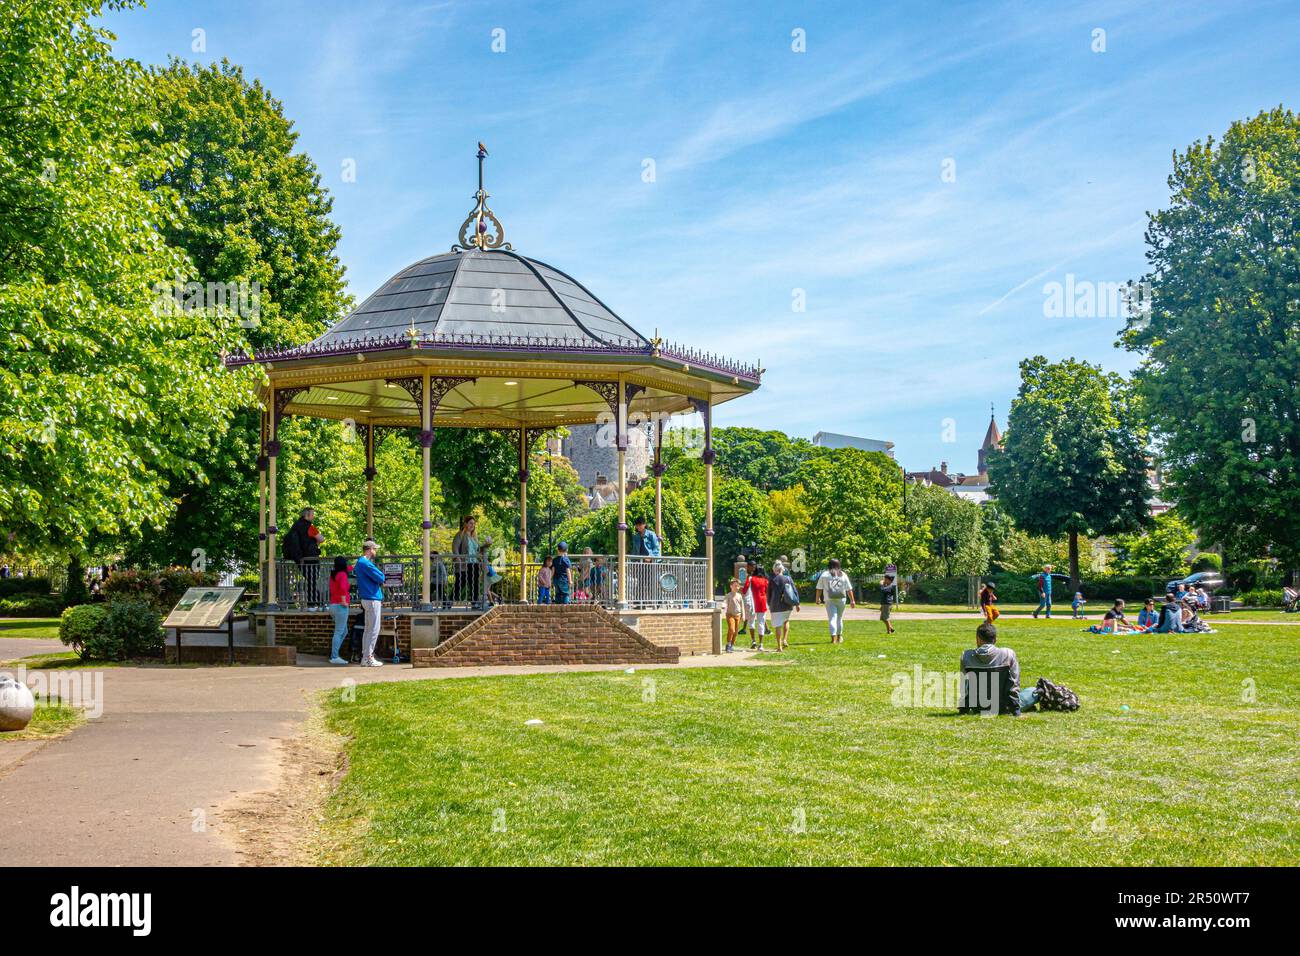 La banda se encuentra en Alexandra Gardens en Windsor, Reino Unido. El parque es exuberante y verde con árboles y césped. Foto de stock